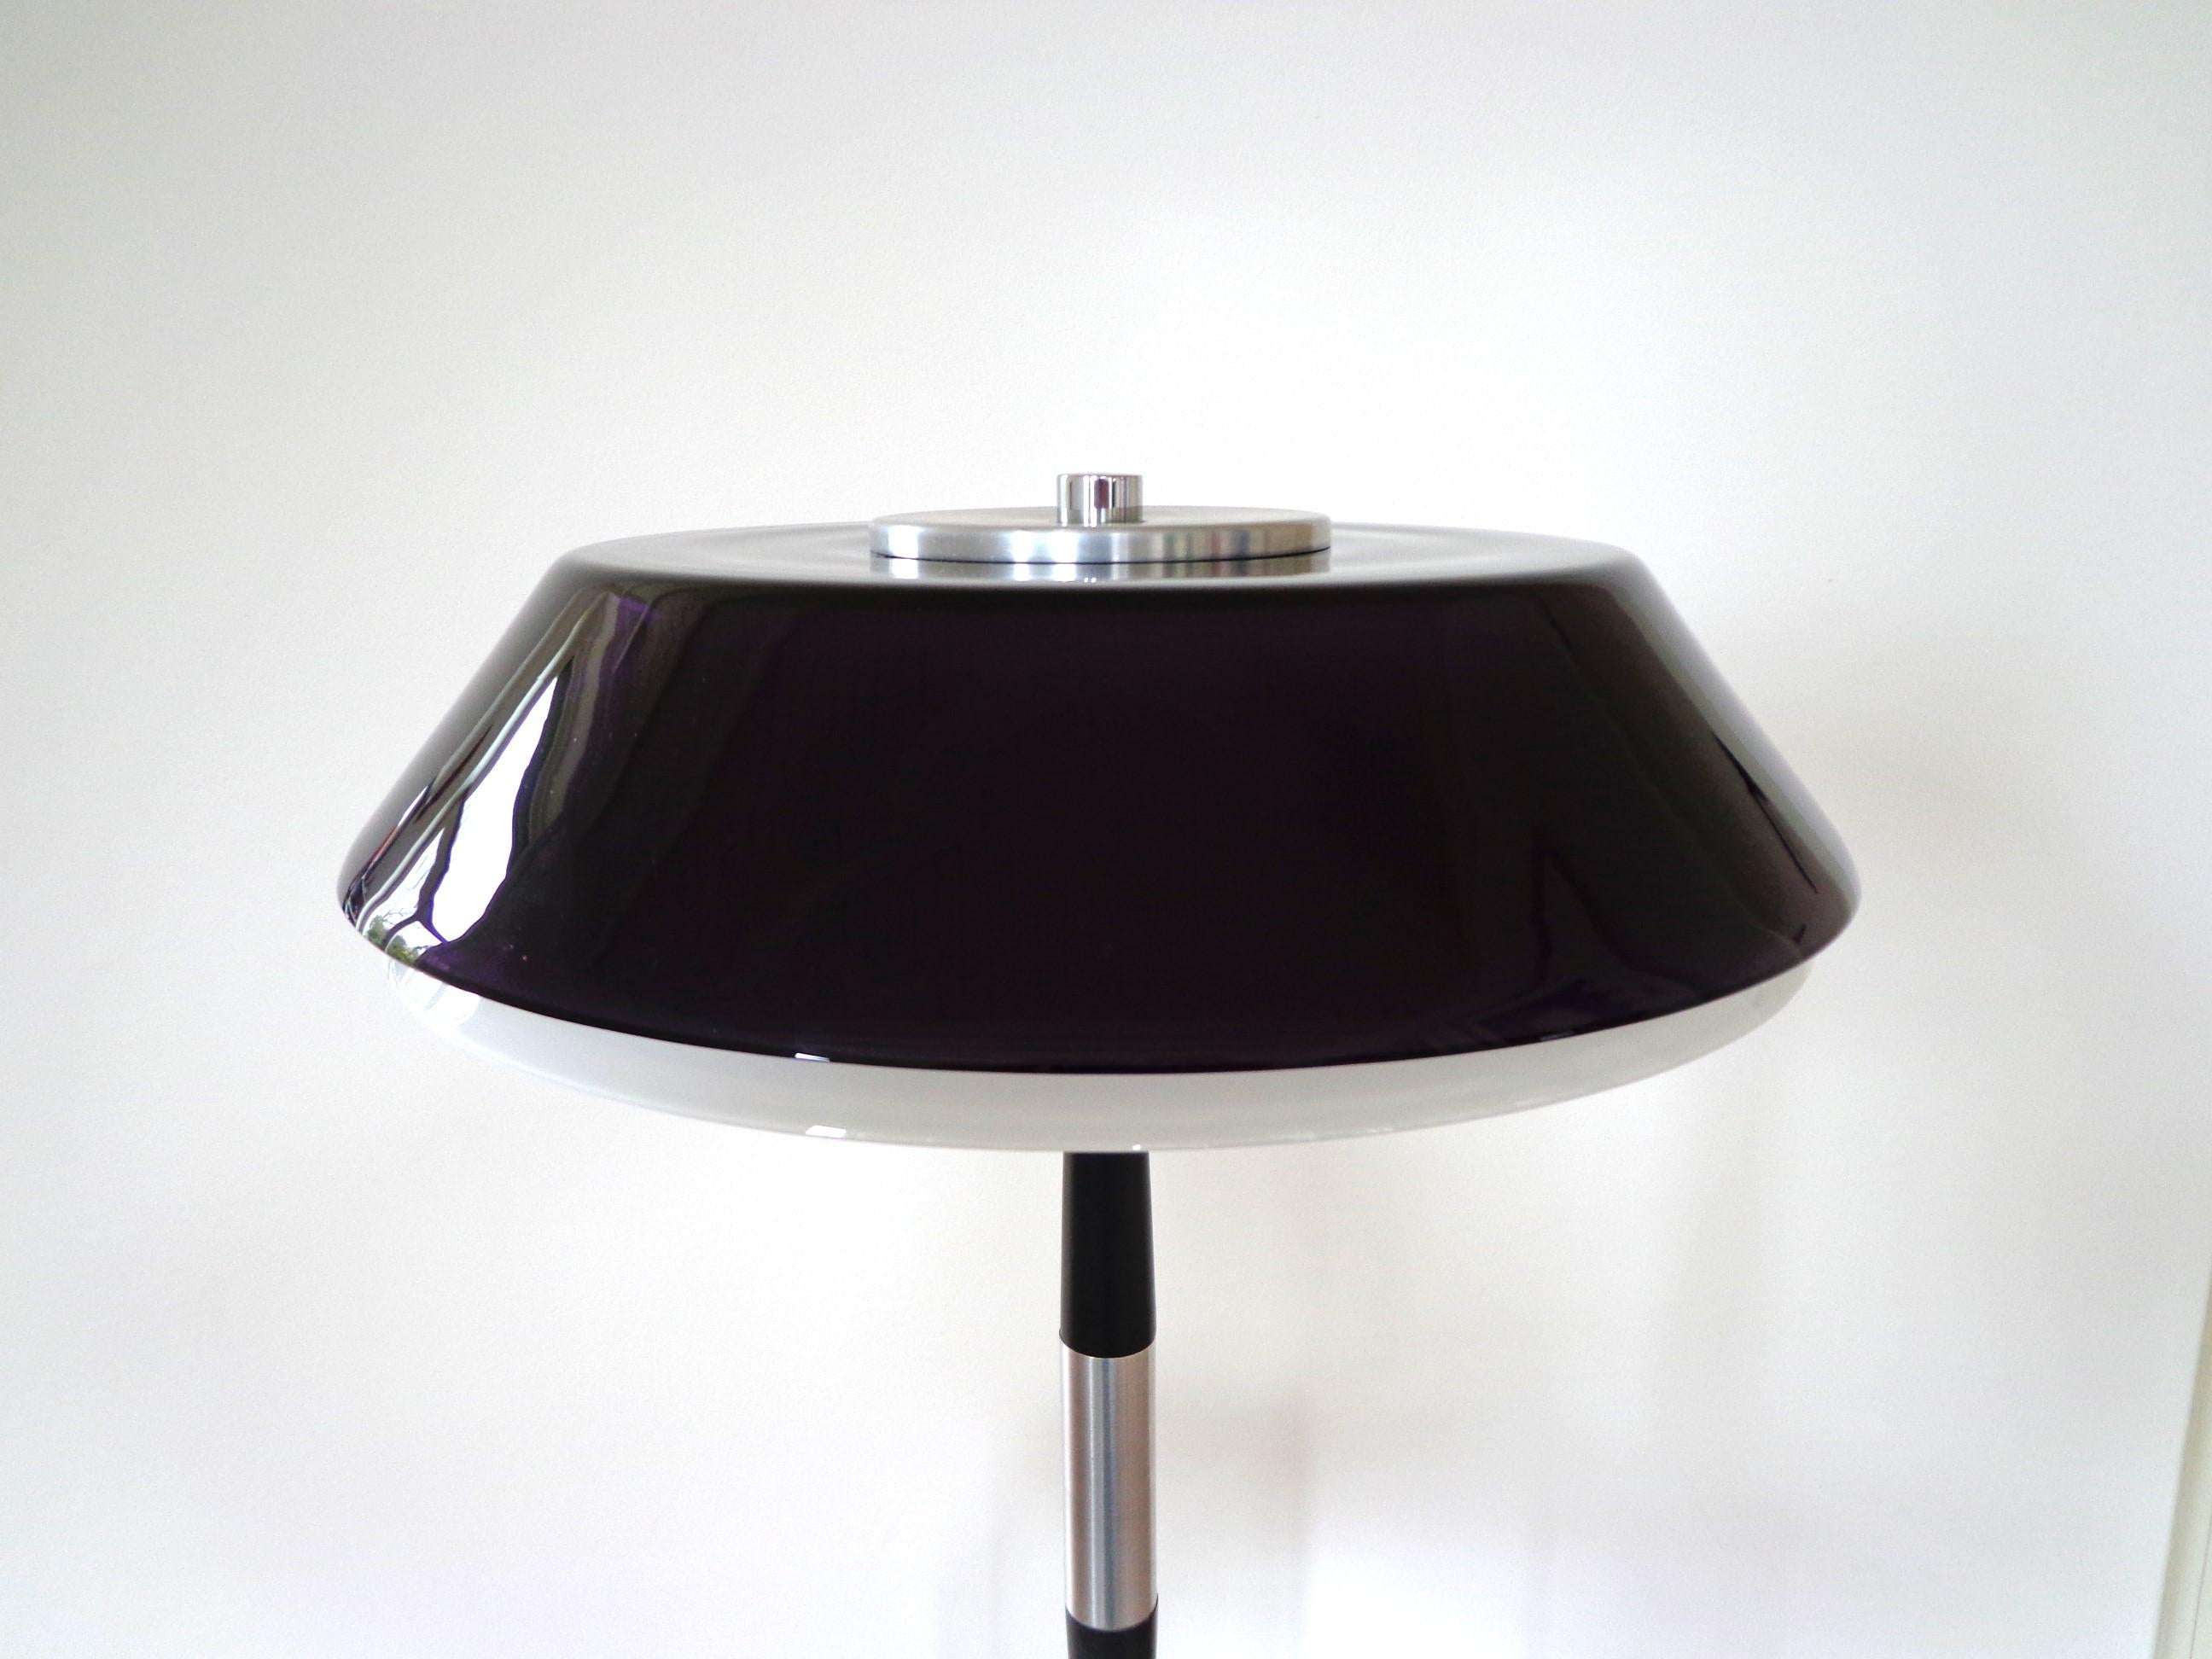 Mid-20th Century Jo Hammerborg Table Lamp Model Senior Produced by Fog & Mørup in Denmark For Sale